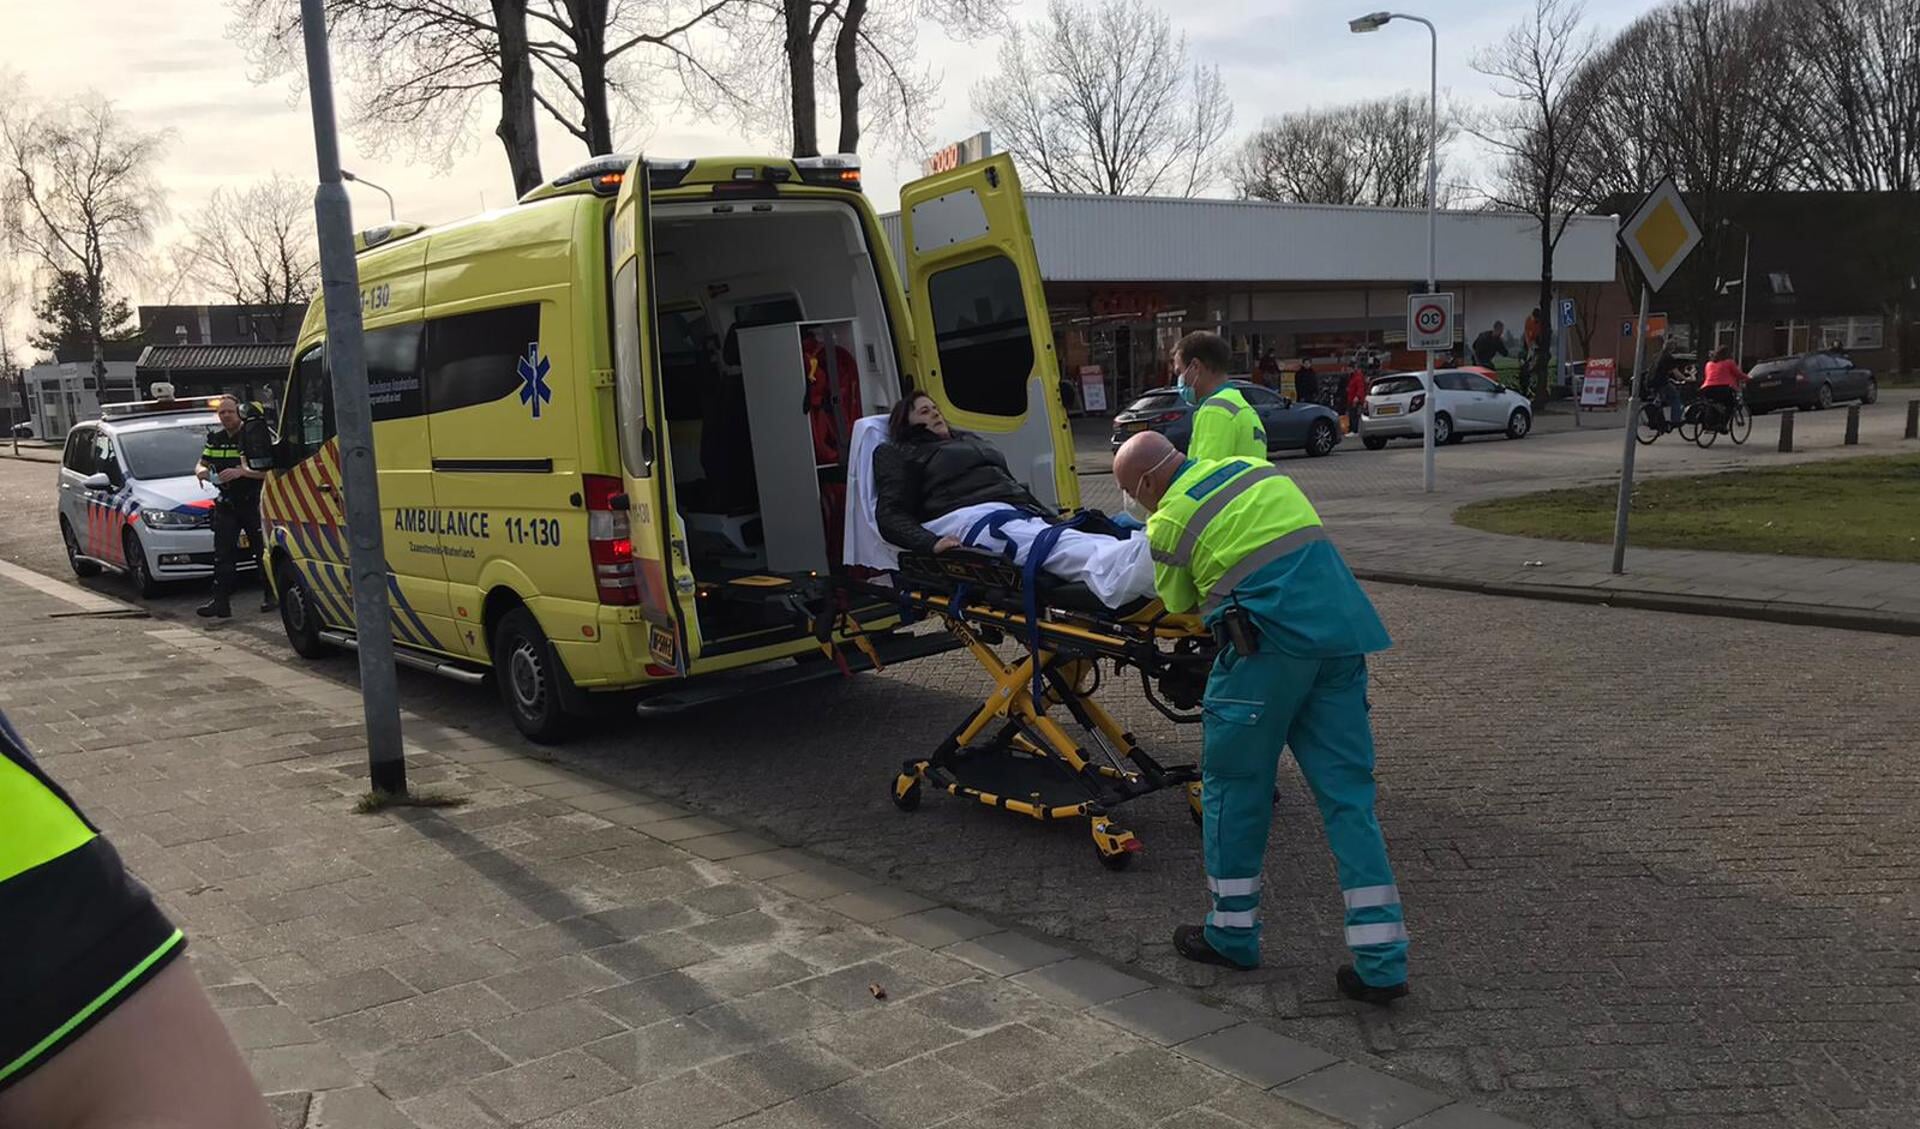 Bont en blauw en met gat in haar been en gebroken ribben werd de motorrijdster zondagmiddag in de ambulance geholpen aan haar verwondingen.  